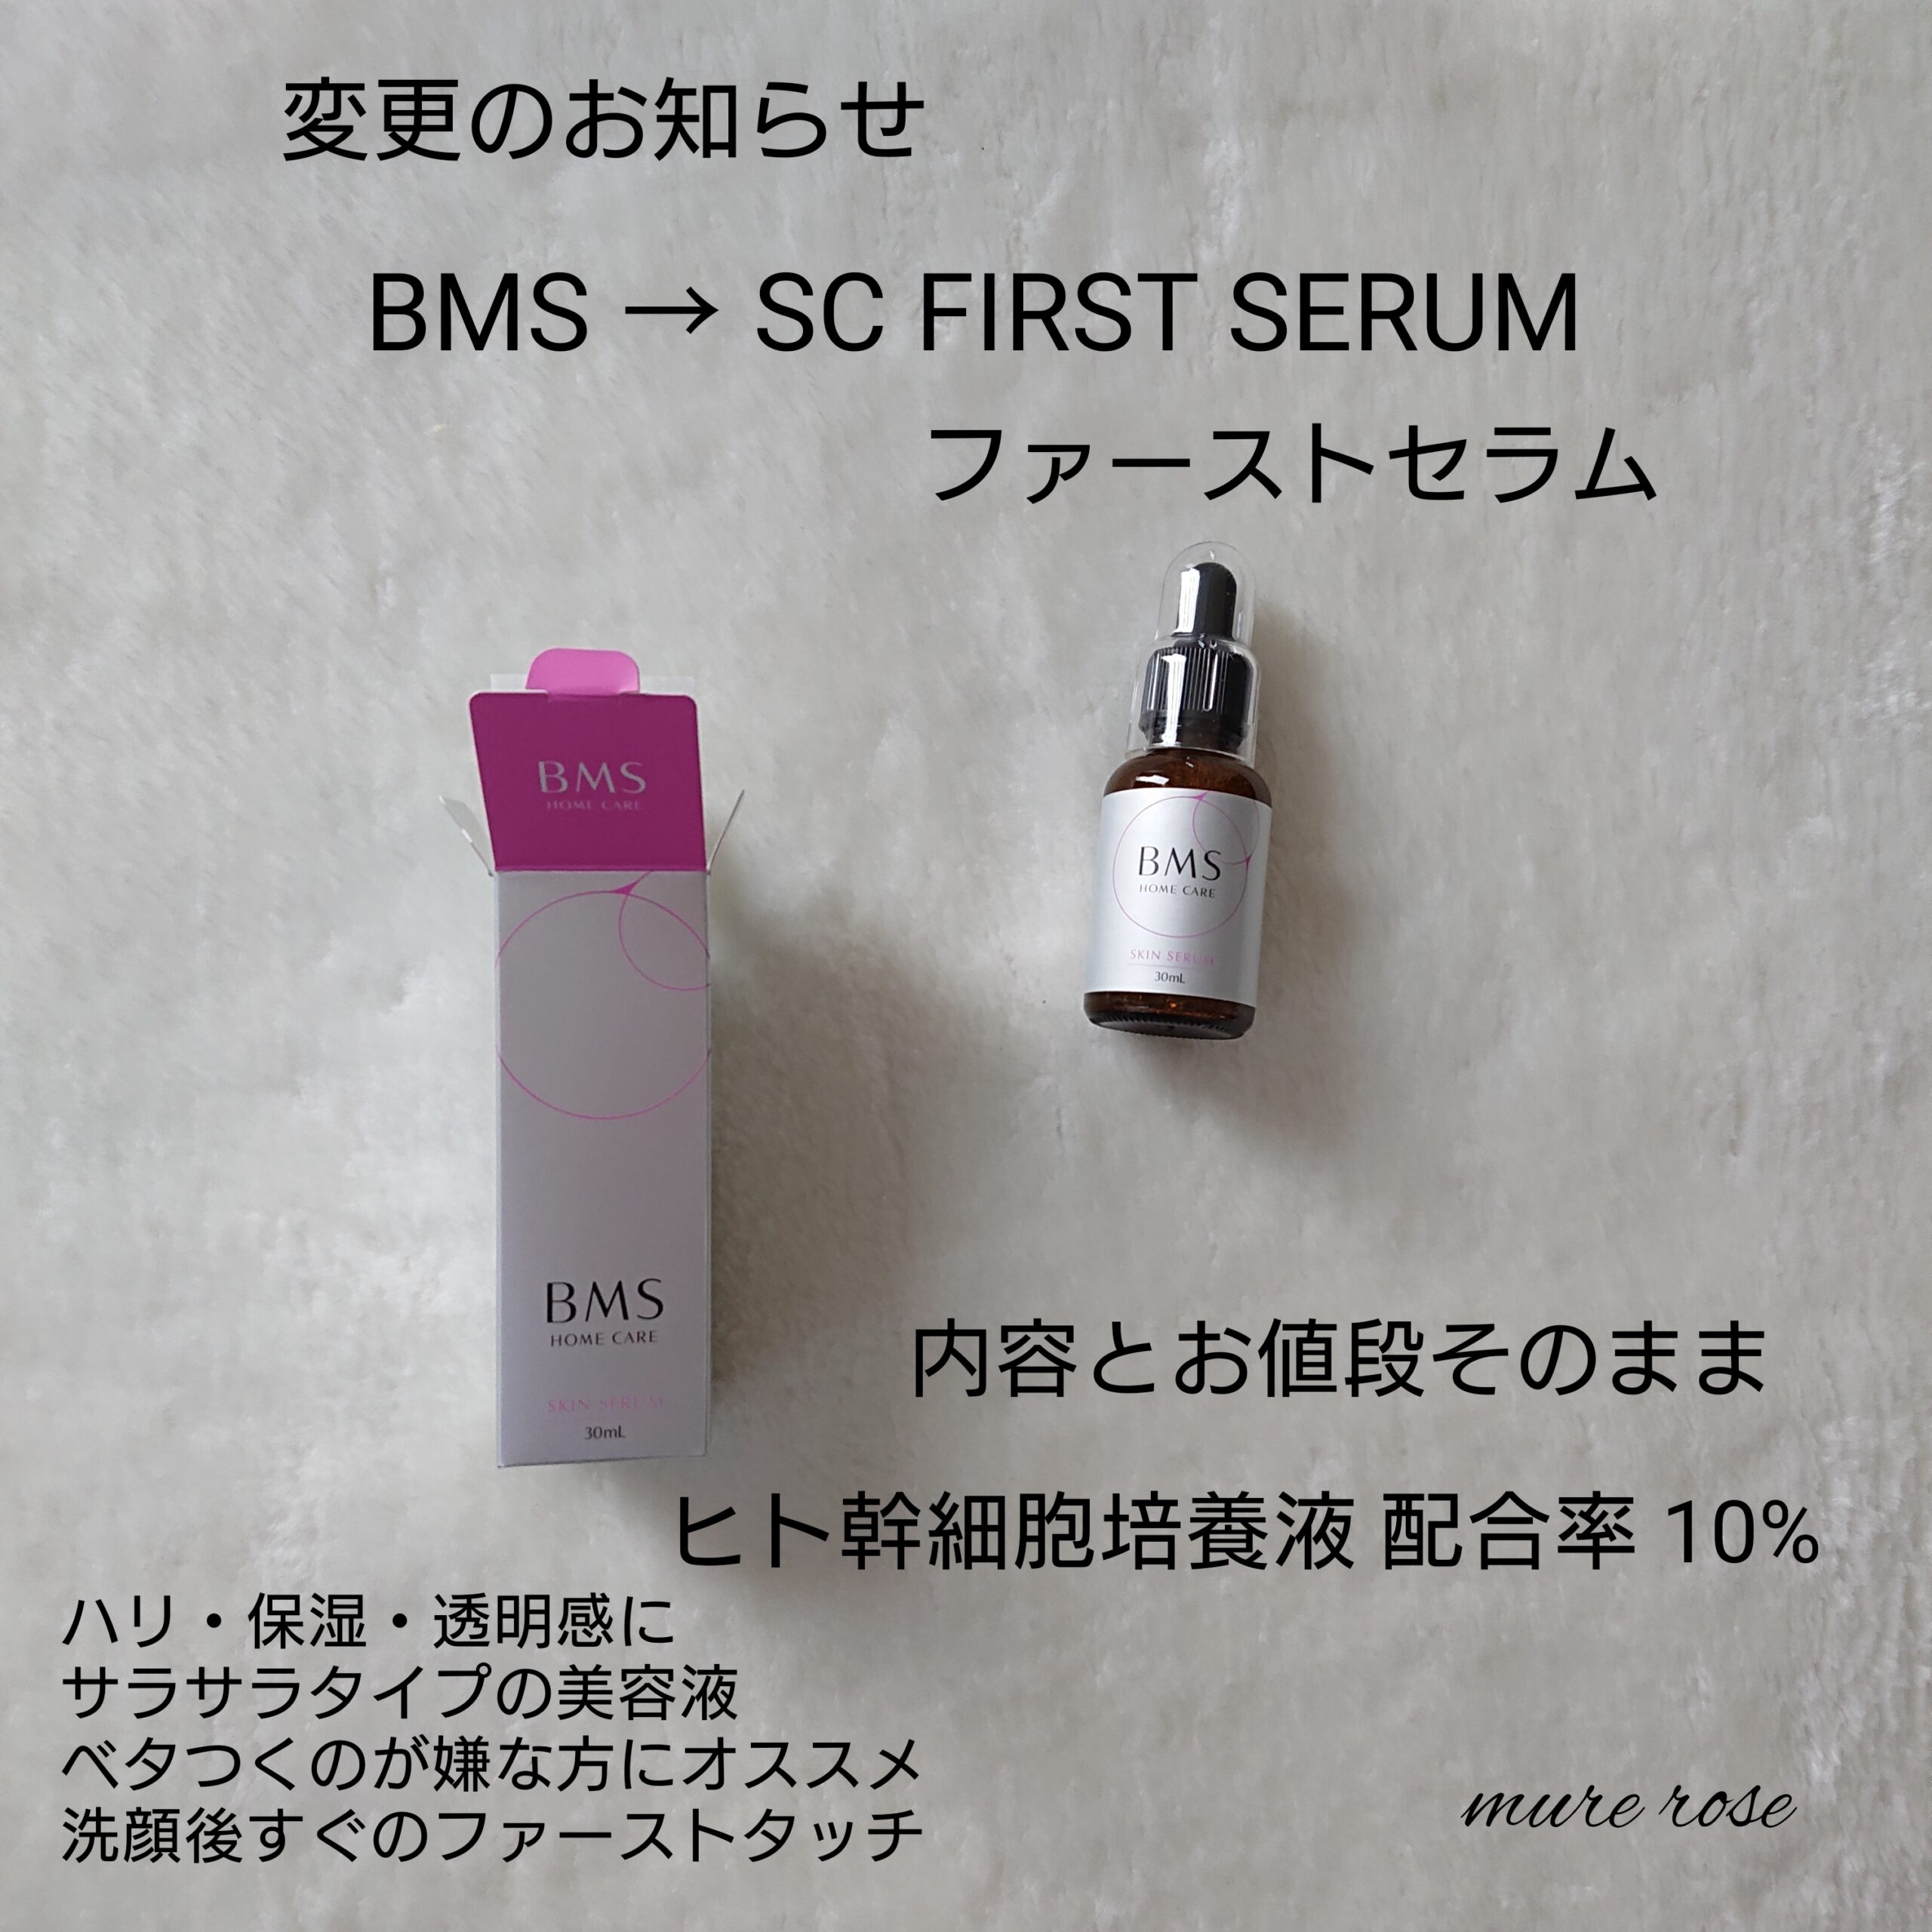 BMS HOME CARE スキンセラム 30mL - スキンケア/基礎化粧品